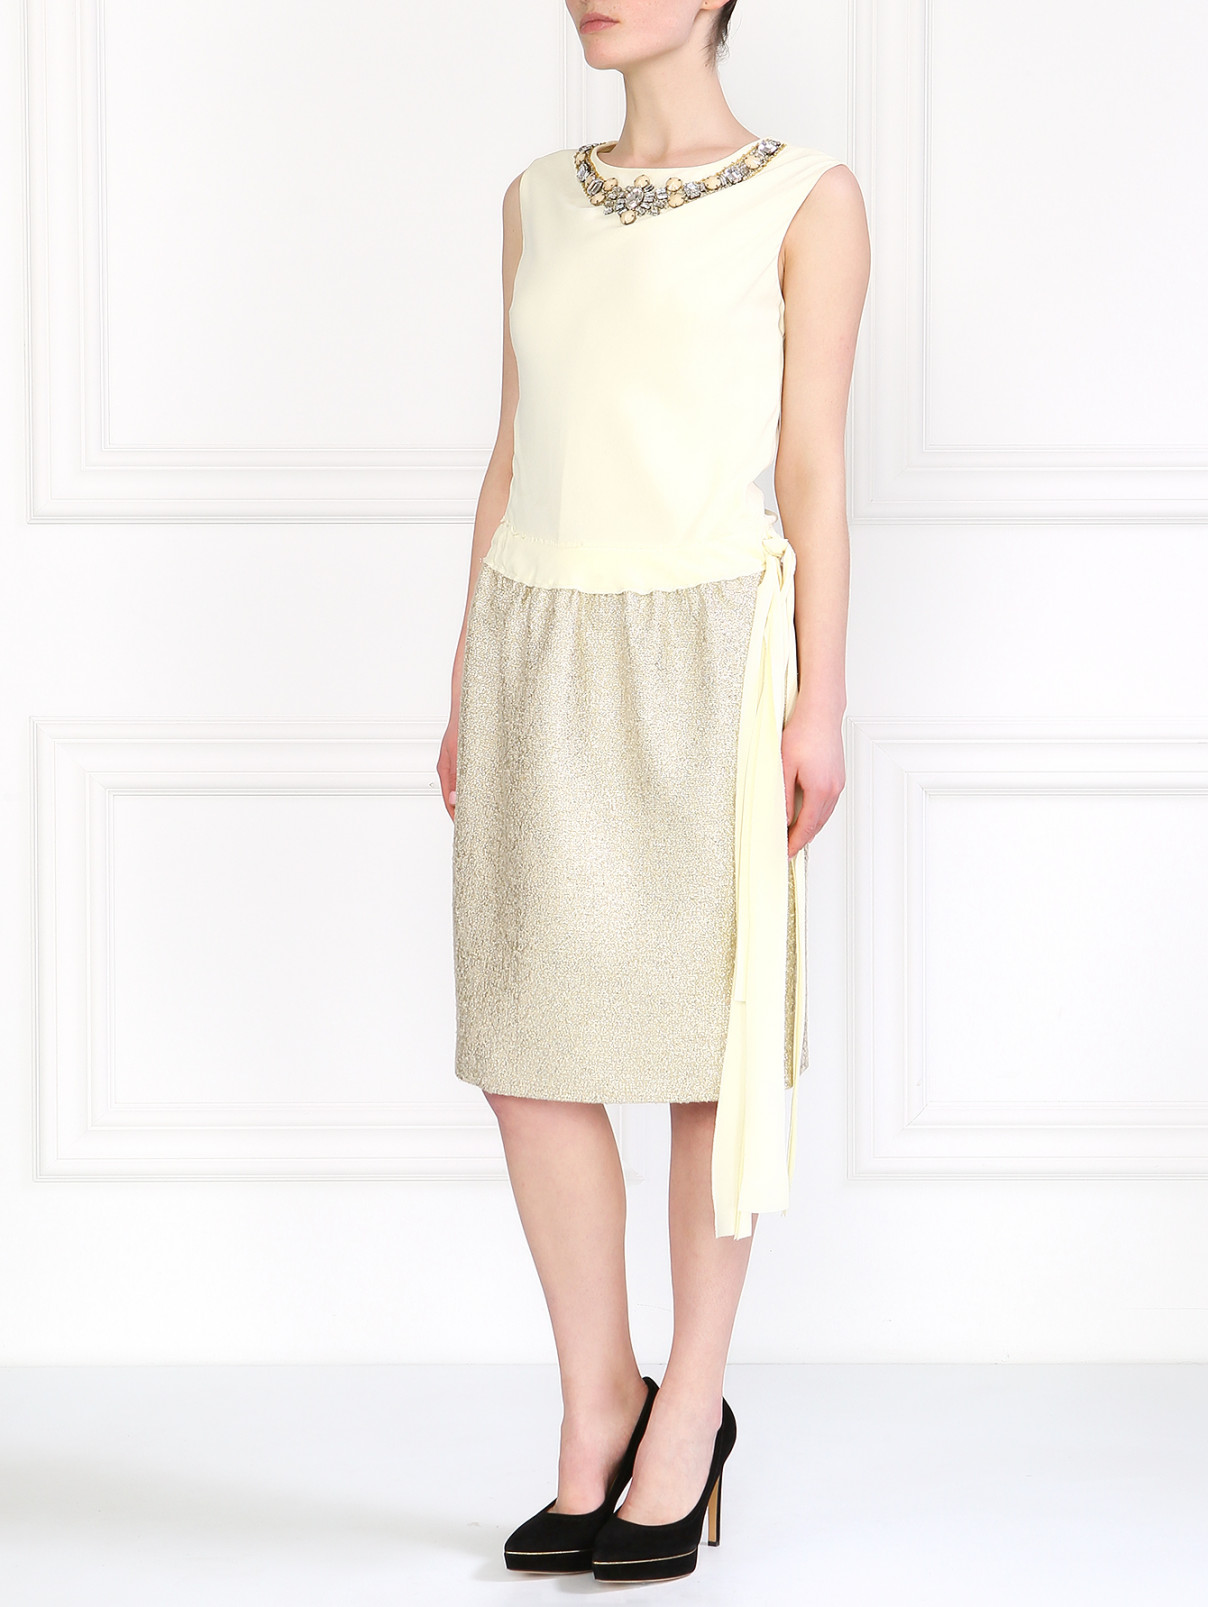 Вечернее платье с декоративным колье Moschino  –  Модель Общий вид  – Цвет:  Желтый